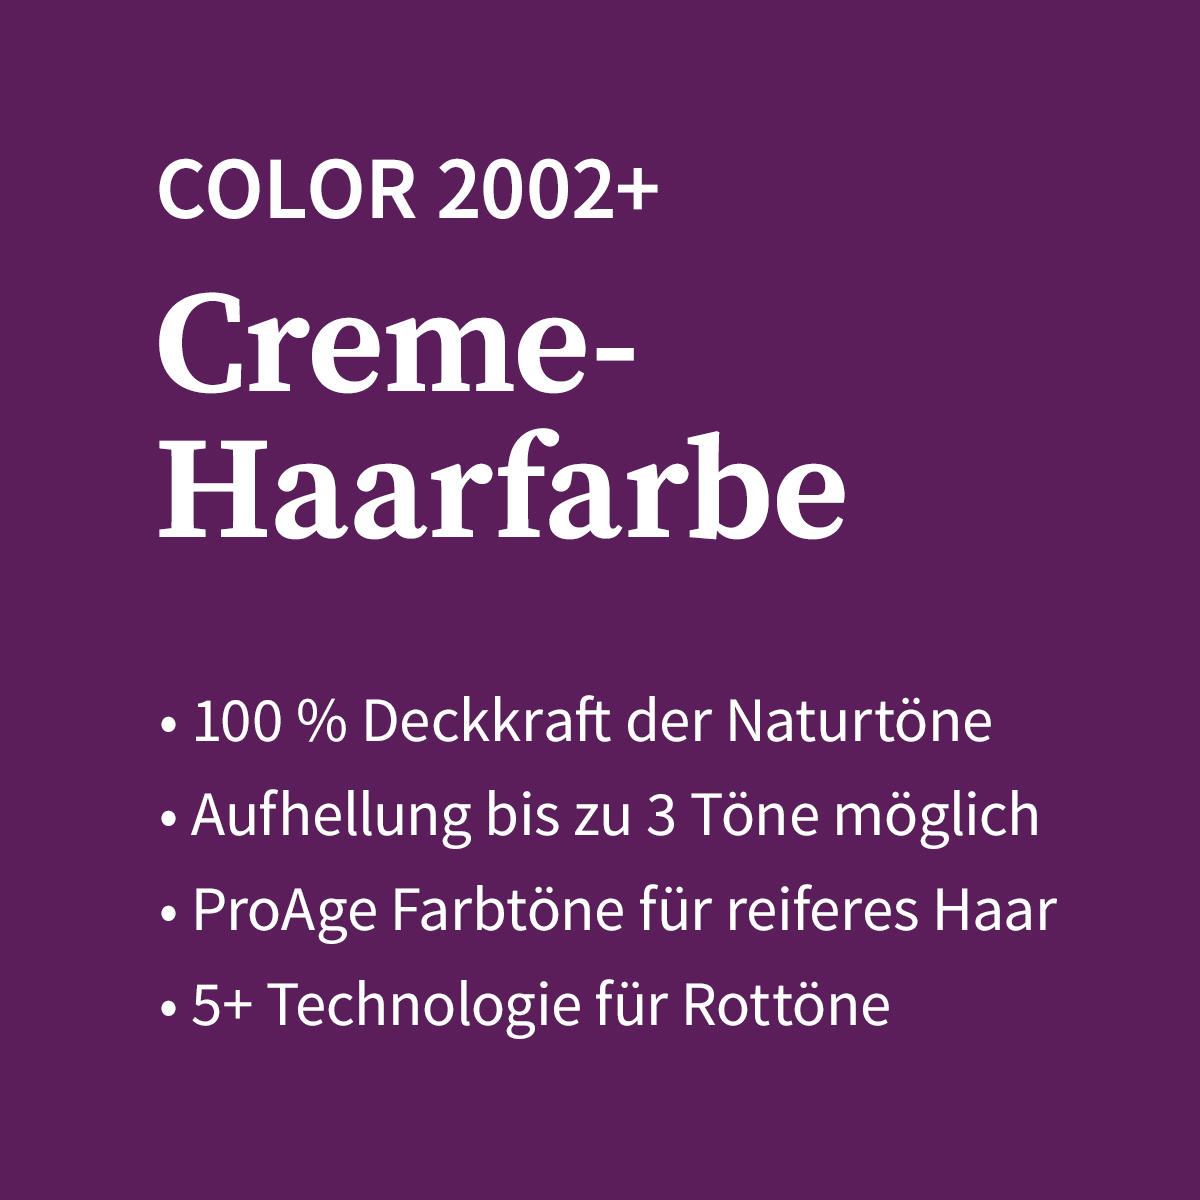 Basler Color 2002+ Cremehaarfarbe 4/i mittelbraun intensiv, Tube 60 ml - 4